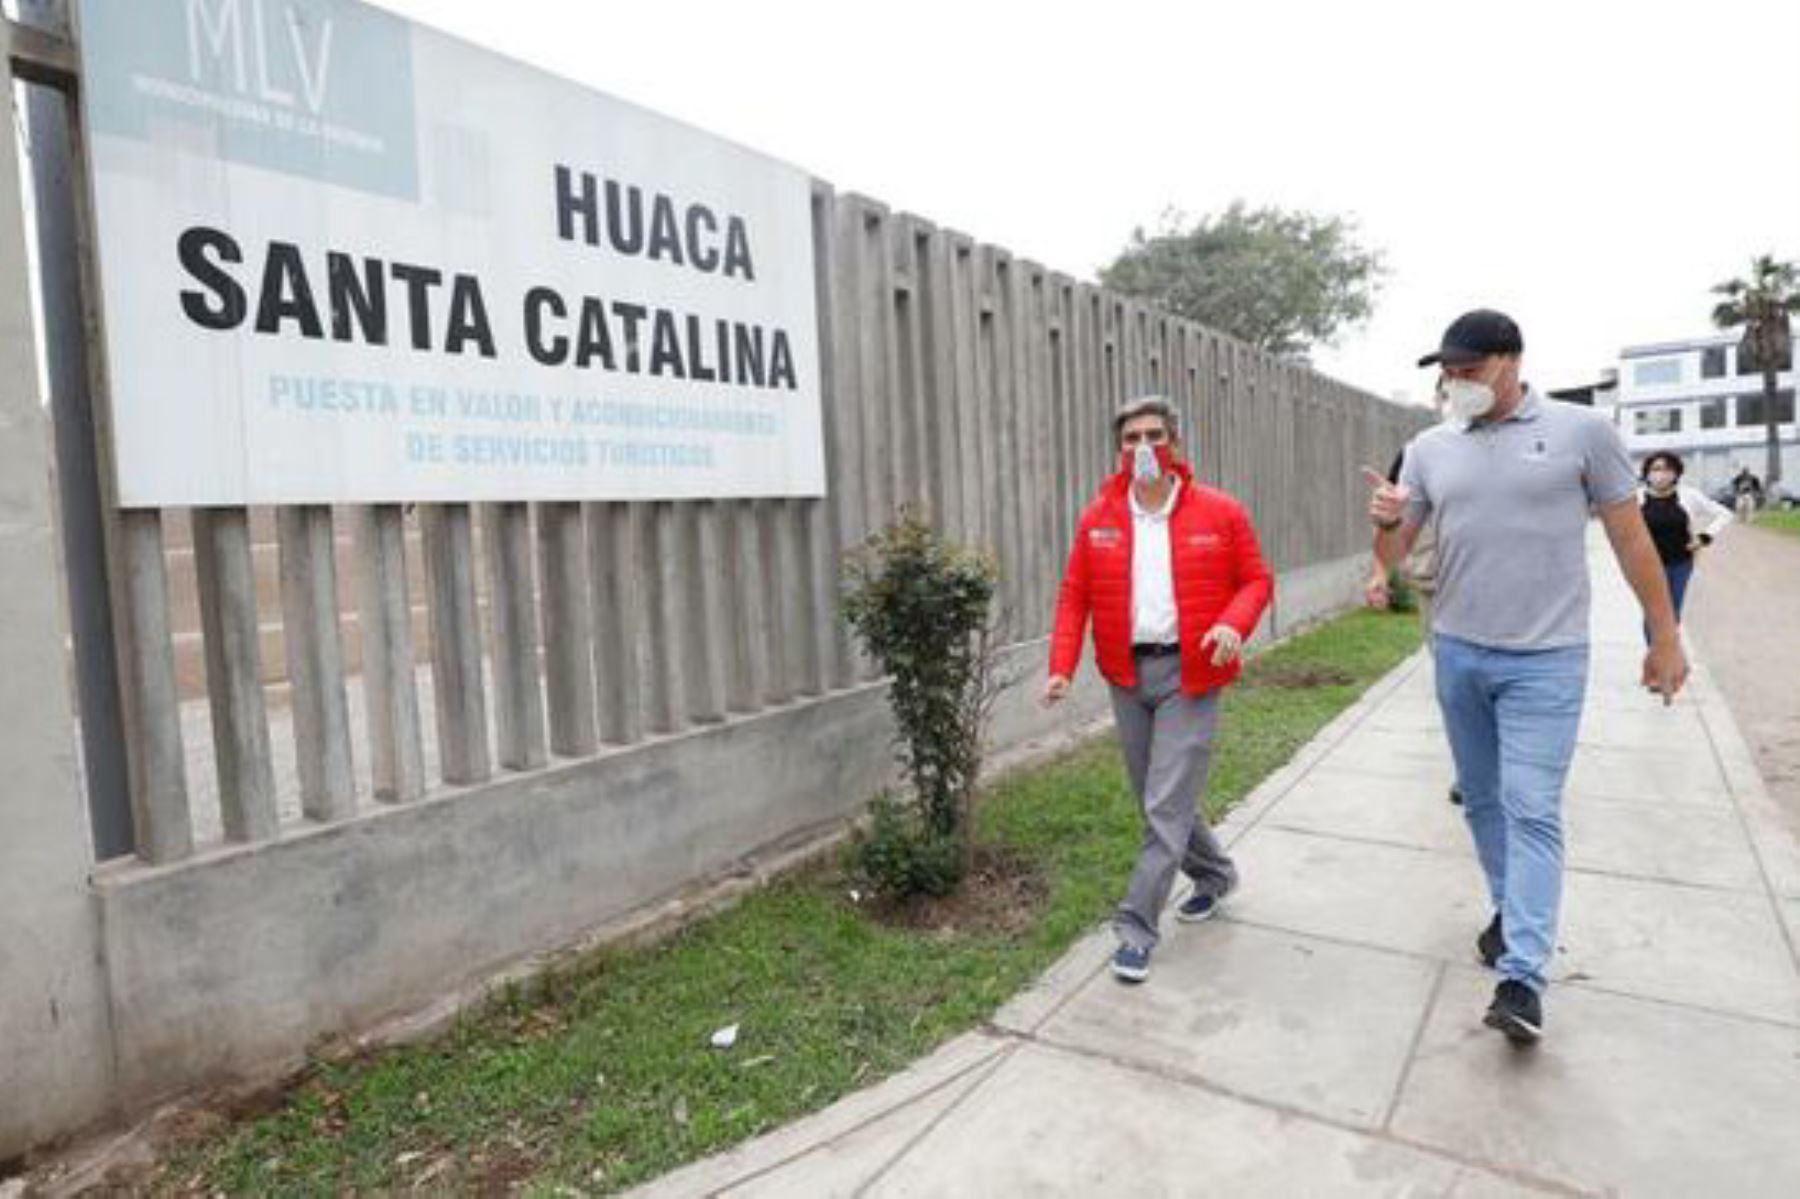 El ministro de Cultura, Alejandro Neyra, y el alcalde de La Victoria, George Forsyth, firmaron un convenio para que la administración de la Huaca Santa Catalina quede en manos de la comuna durante cinco años. Foto: ANDINA/Cultura